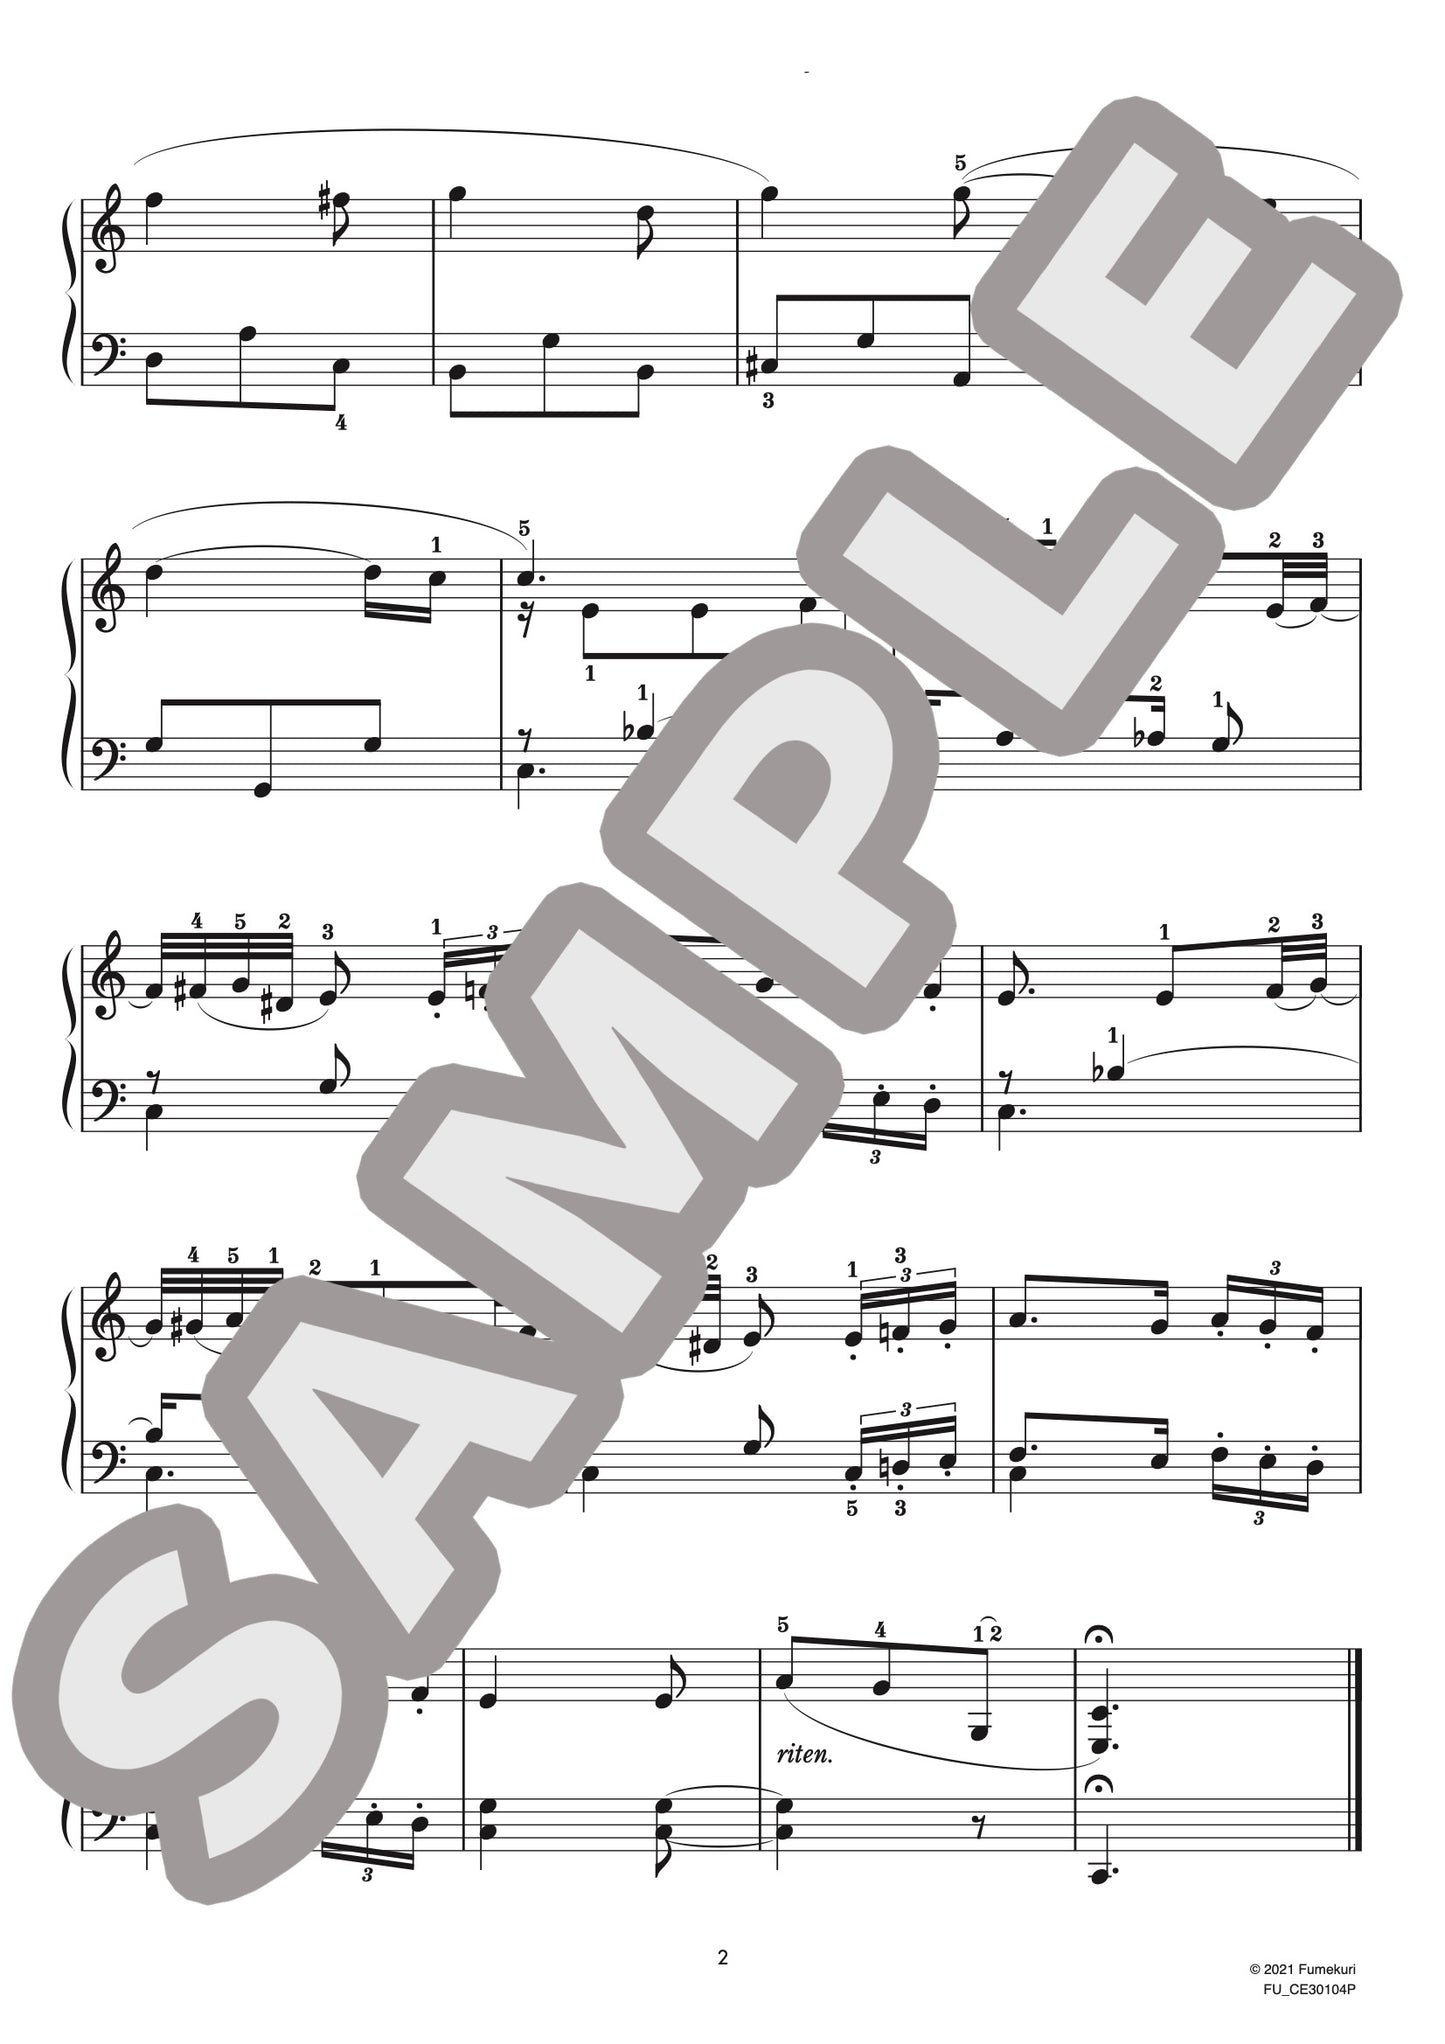 ヴァイオリン・ソナタ 第2番 第3楽章（ロベルト・シューマン) / クラシック・オリジナル楽曲【初級】